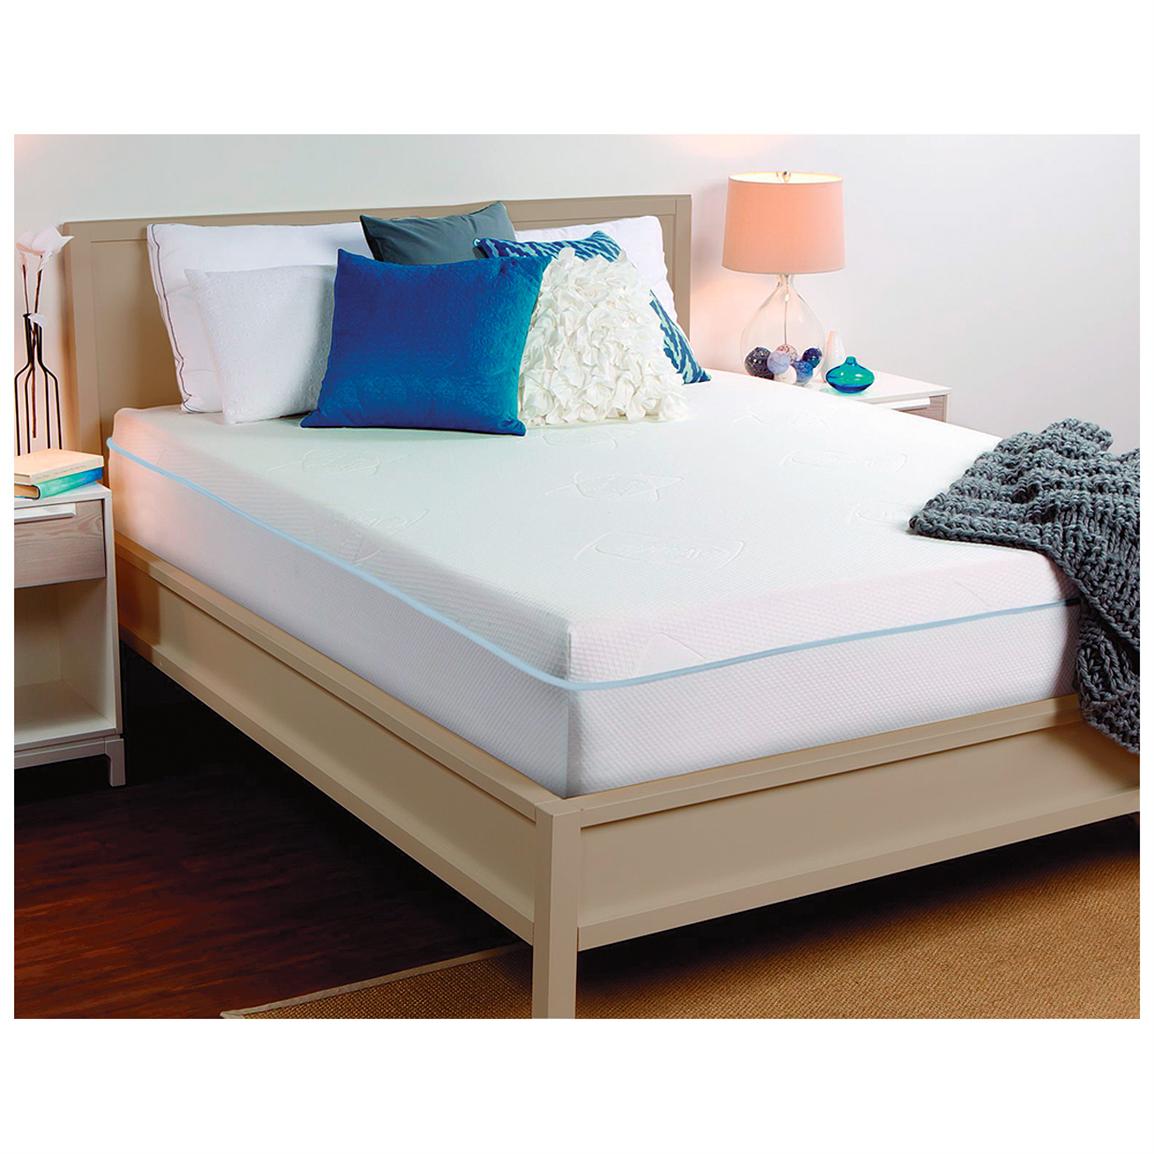 sealy-10-memory-foam-mattress-queen-299701-mattresses-frames-at